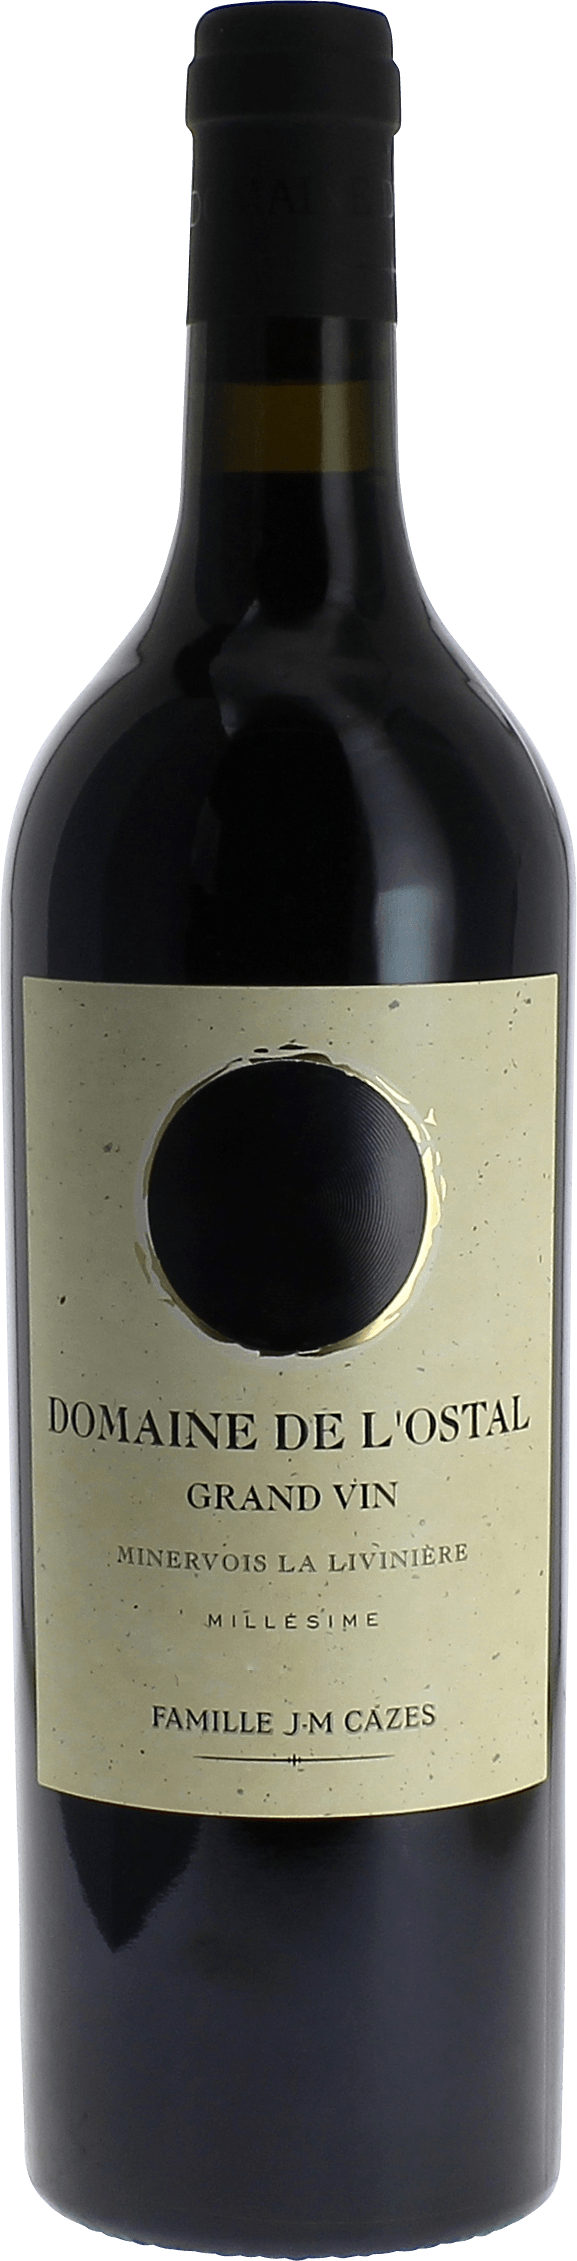 Domaine de l'ostal grand vin la livinire 2015  , Minervois rouge